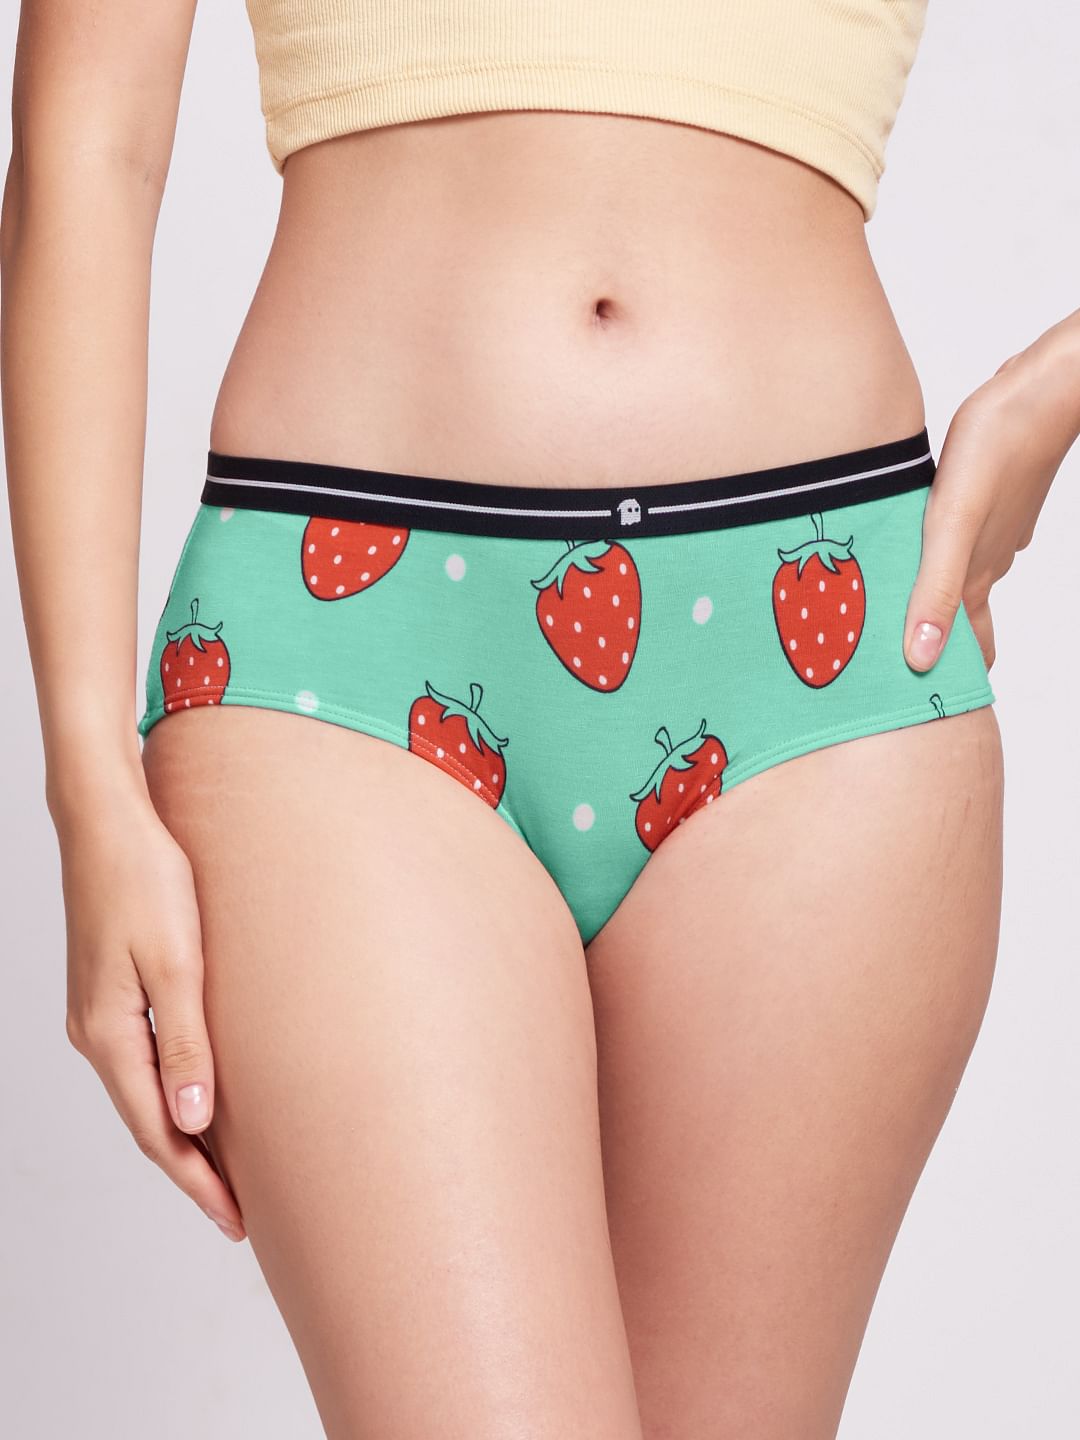 Buy Strawberry Underwear online